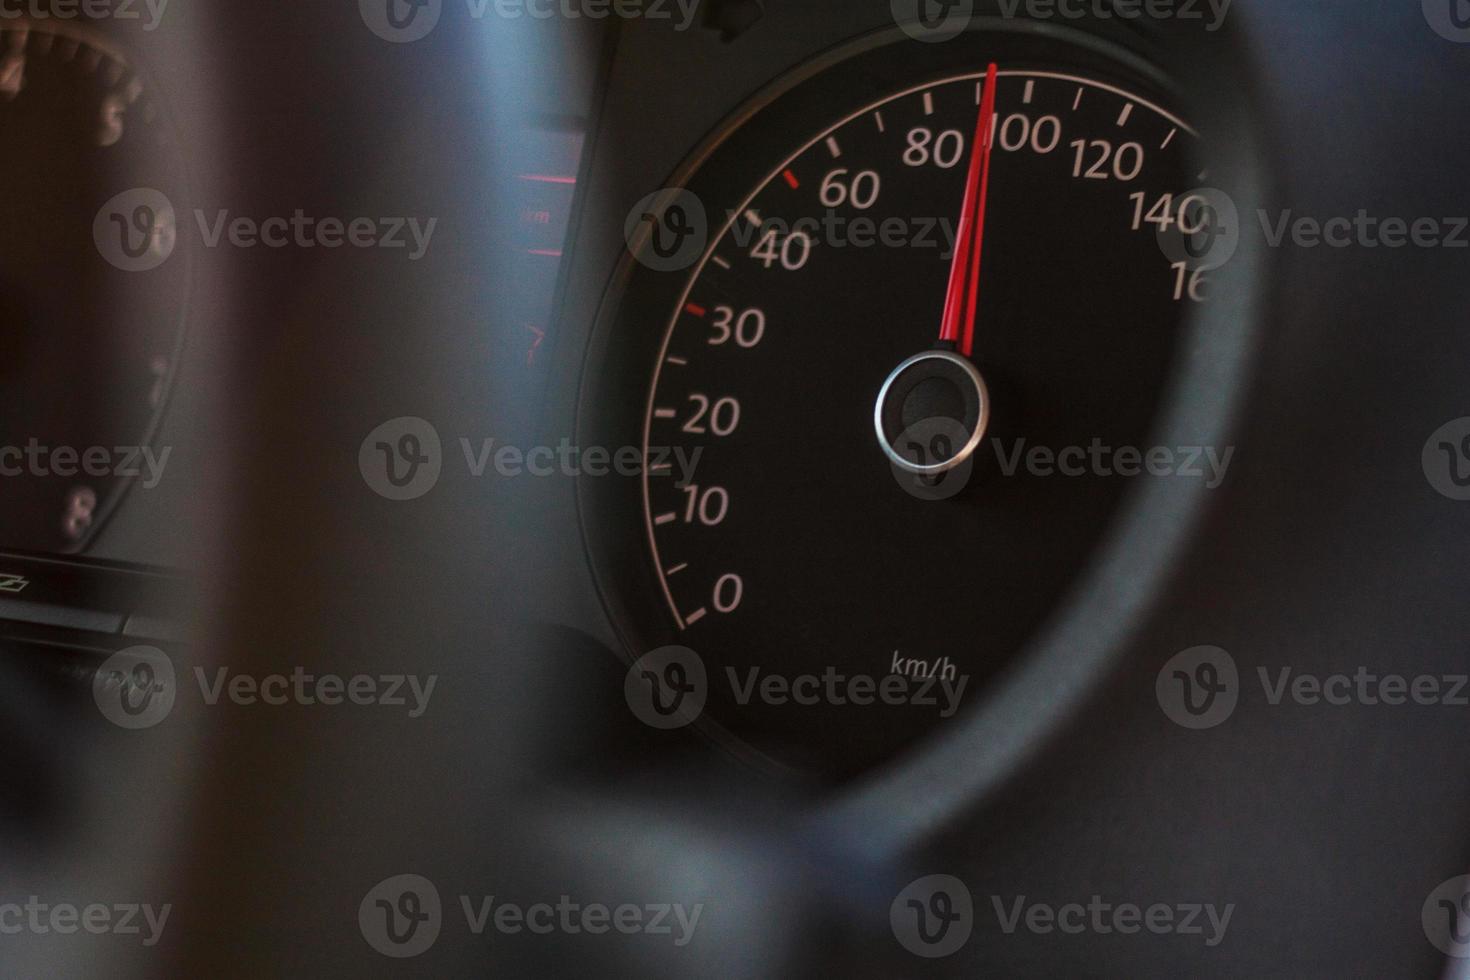 high speed on speedometer in automobile on dark background photo